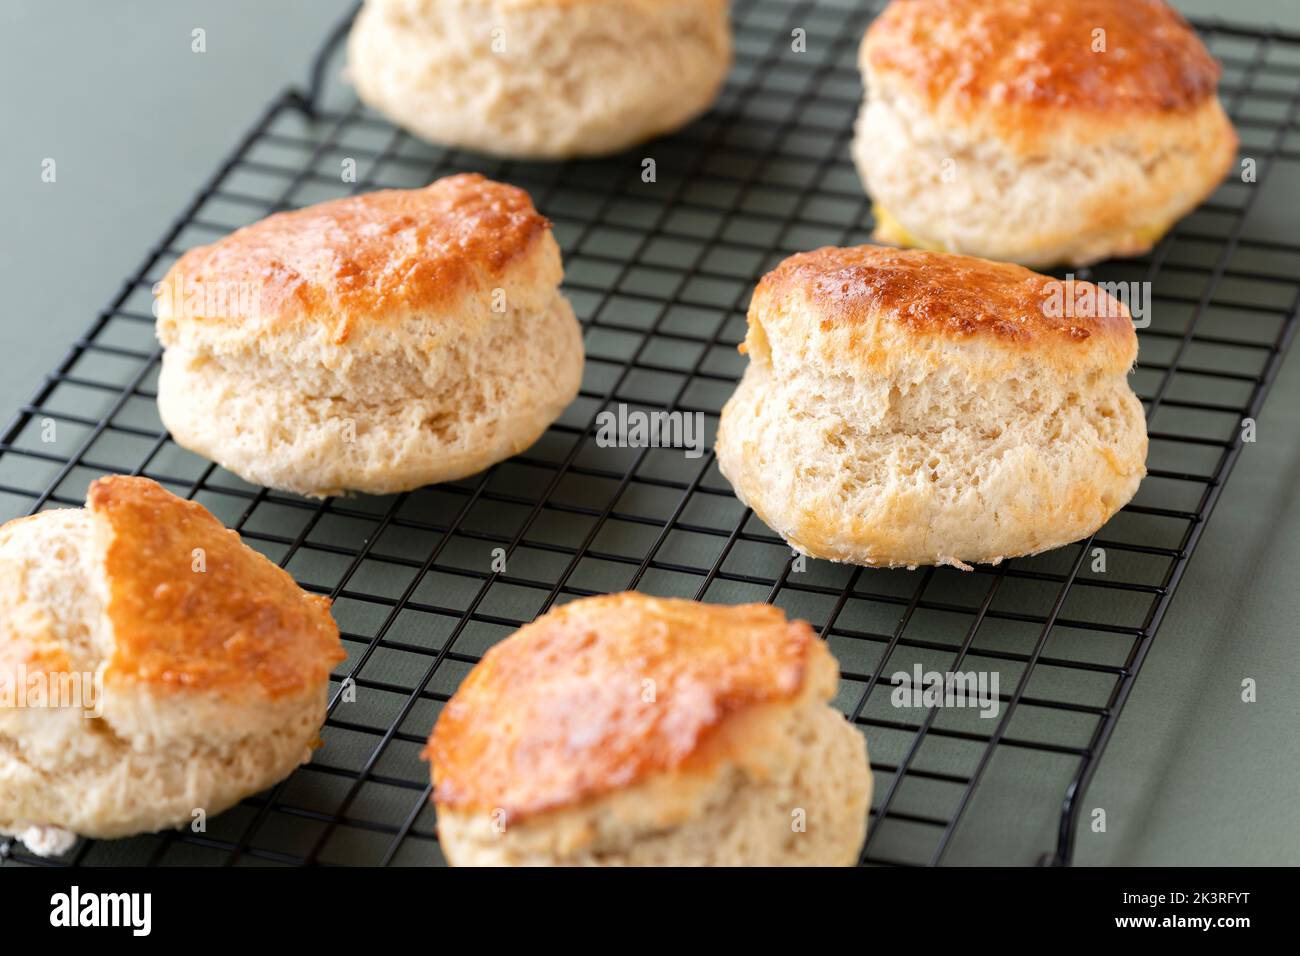 Sechs frisch gebackene traditionelle Scones kühlen auf einem Drahtgestell, das gerade aus dem Ofen genommen wurde. Die leckeren Kuchen-Leckereien sind gut aufgegangen Stockfoto